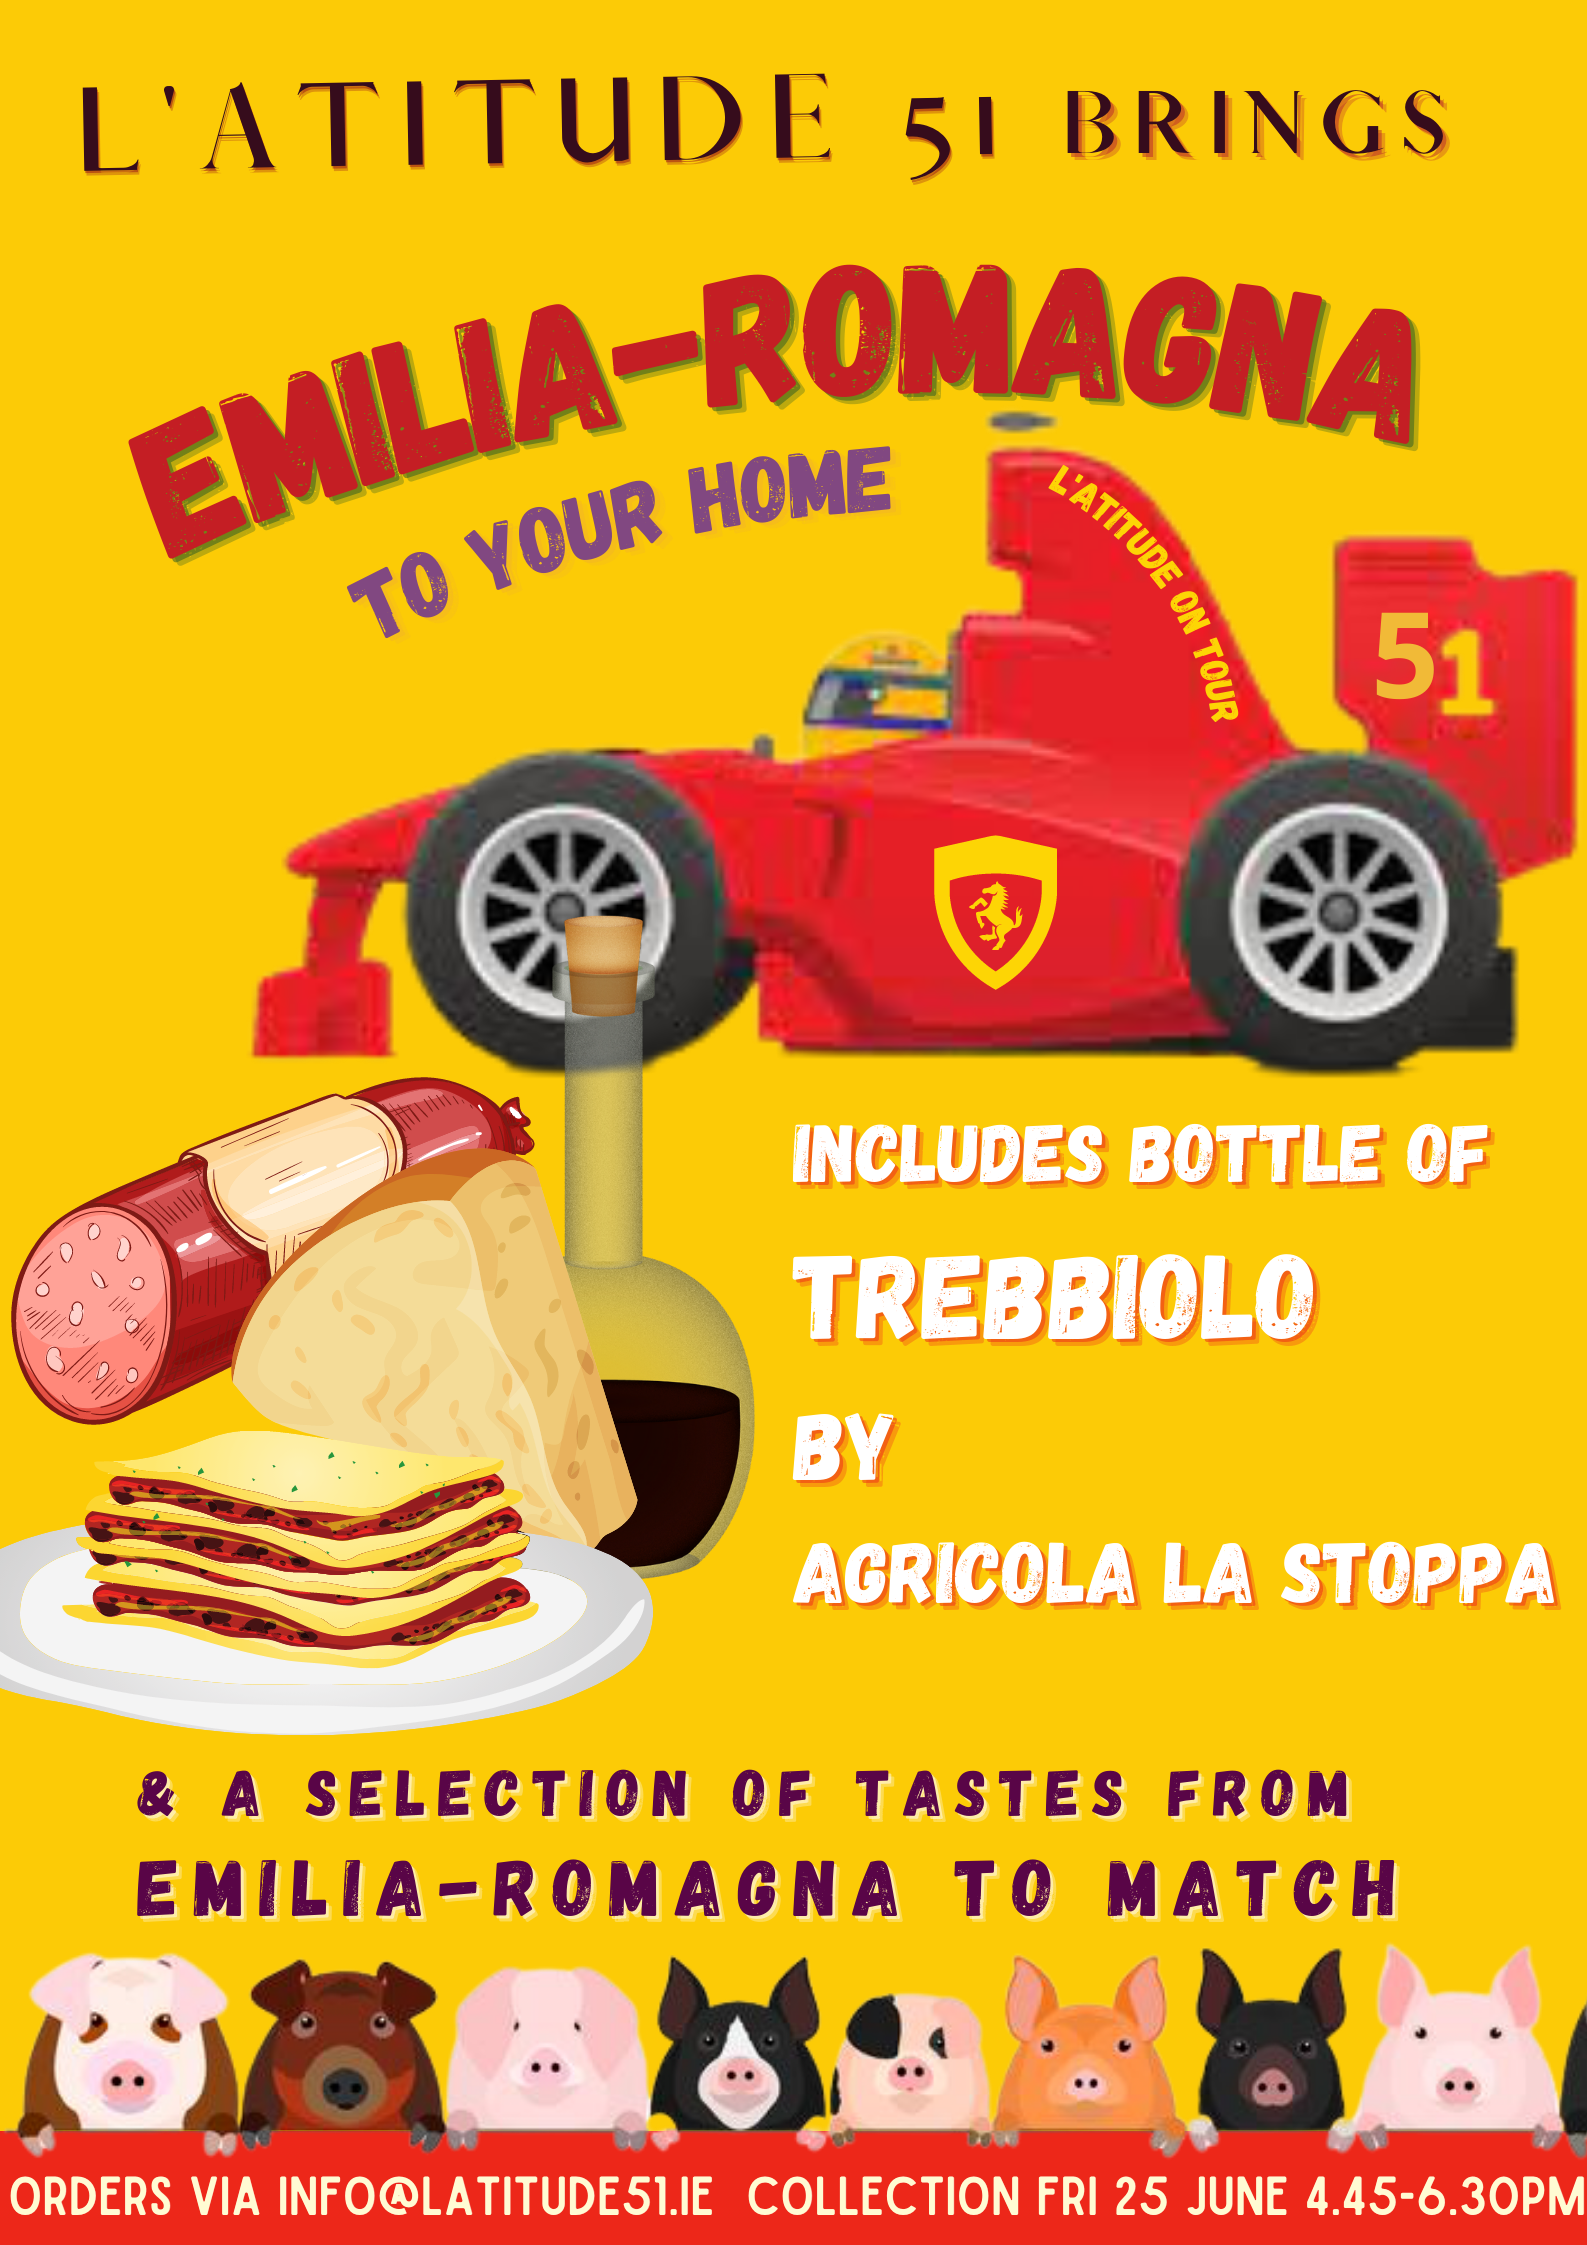 A Taste of Emilia-Romagna